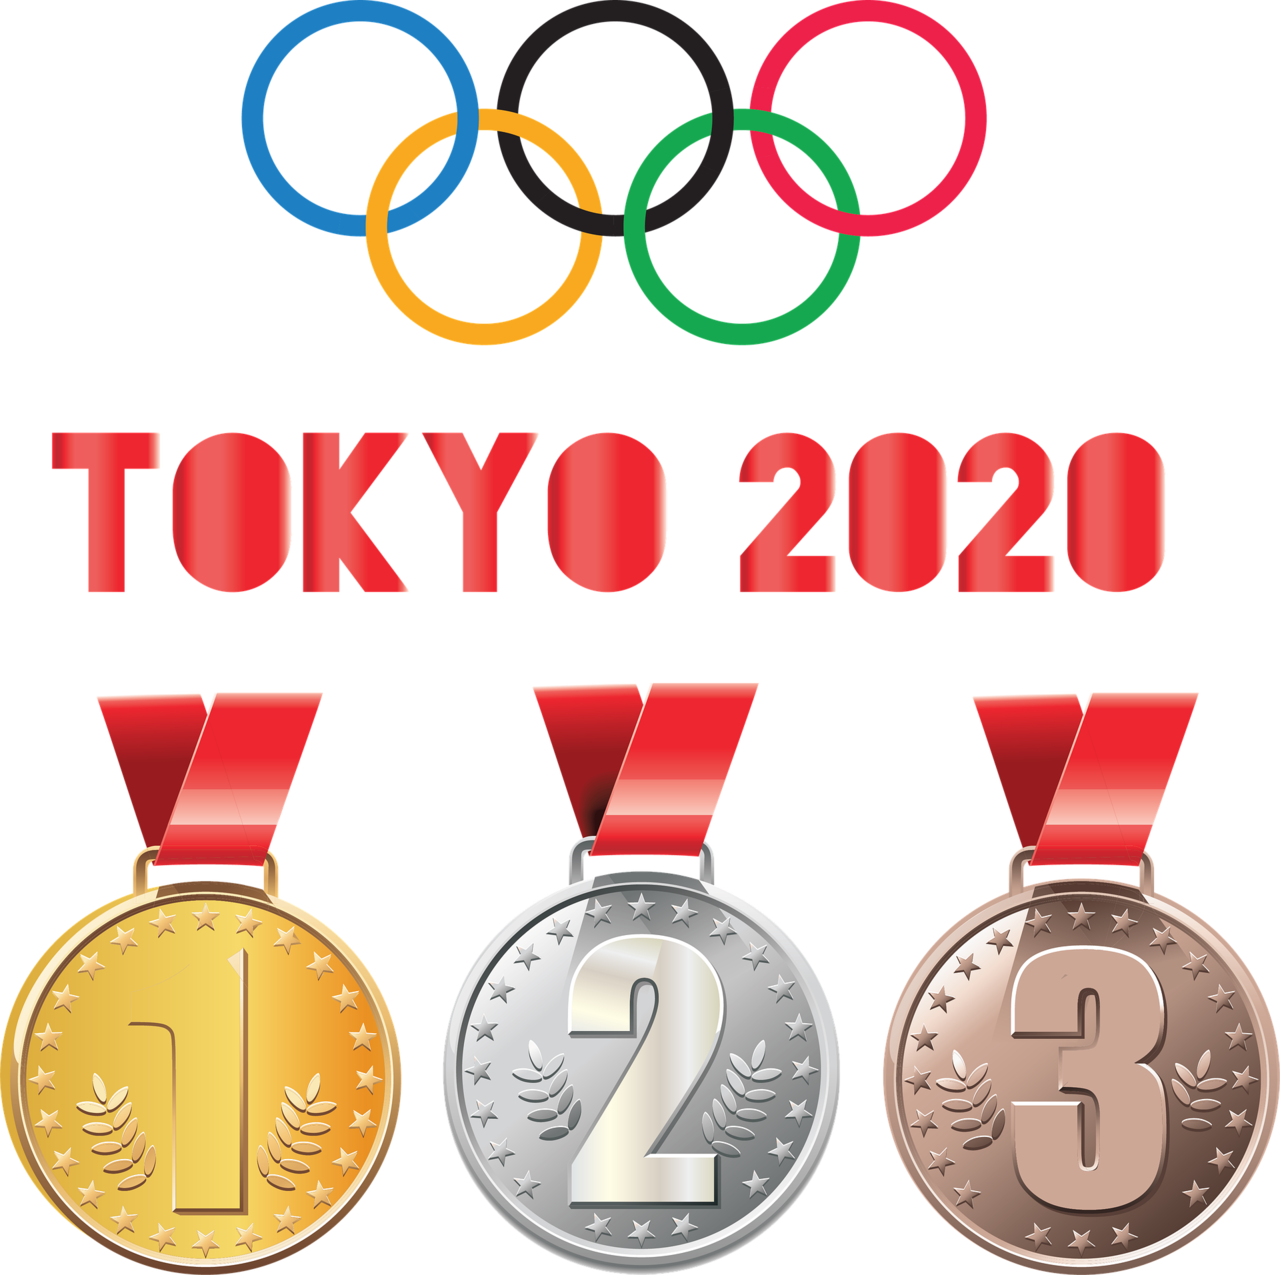 佐賀市 東京オリンピックの事前キャンプの海外選手の公開練習が7 24 7 27などに行われます 号外net 佐賀市 小城市 多久市